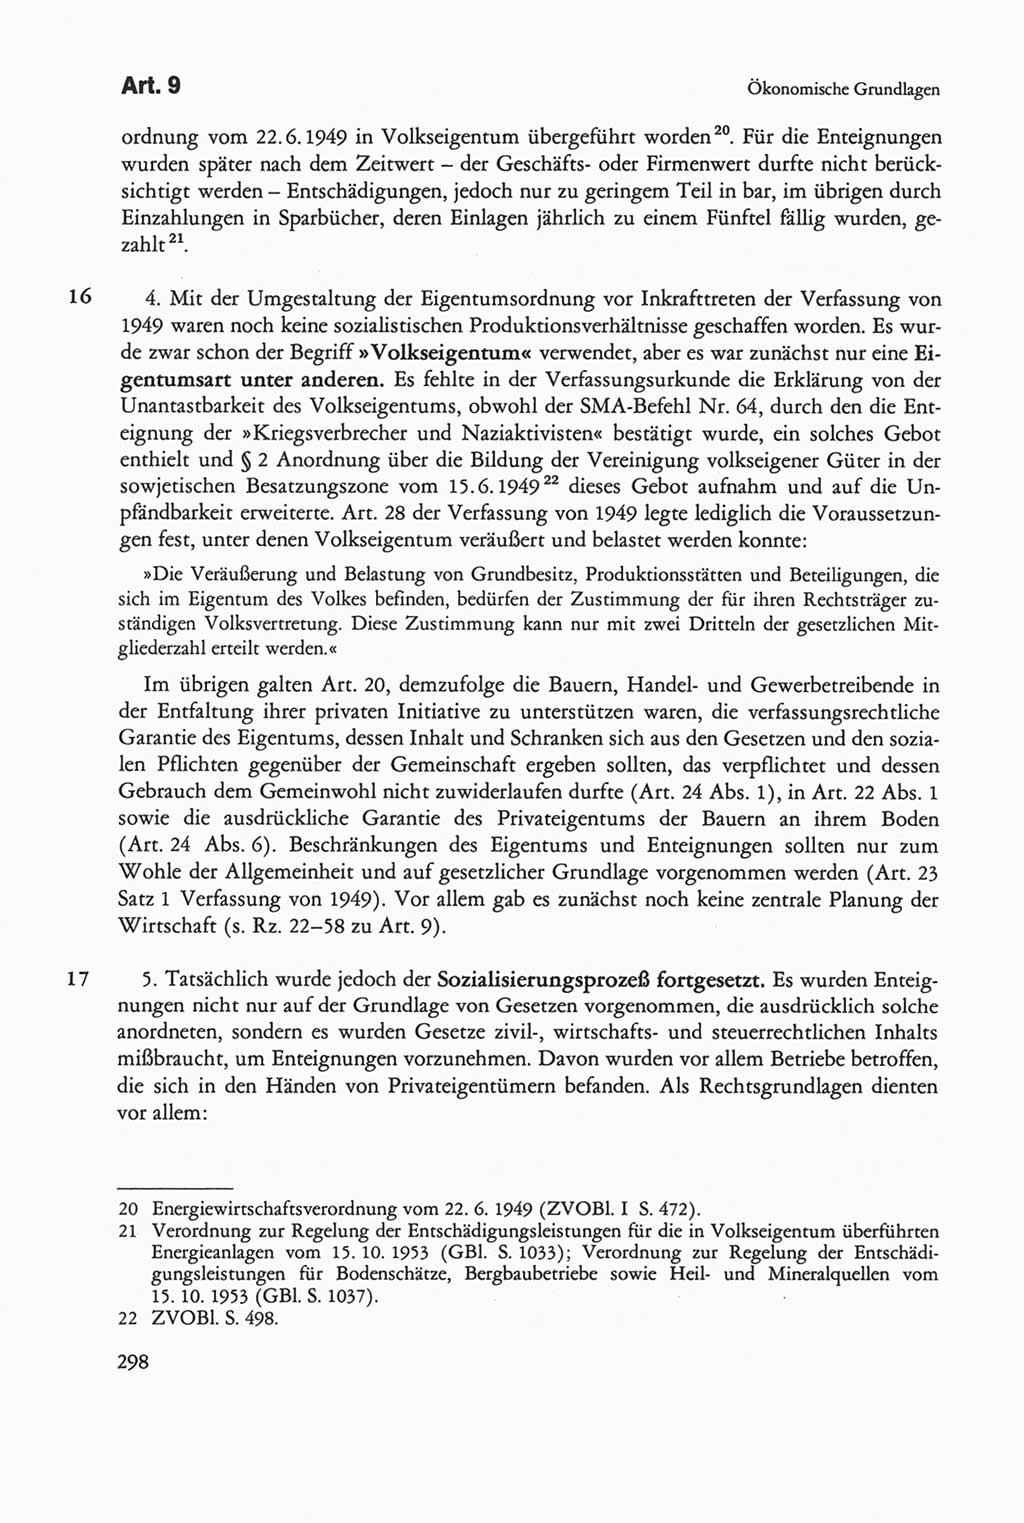 Die sozialistische Verfassung der Deutschen Demokratischen Republik (DDR), Kommentar mit einem Nachtrag 1997, Seite 298 (Soz. Verf. DDR Komm. Nachtr. 1997, S. 298)